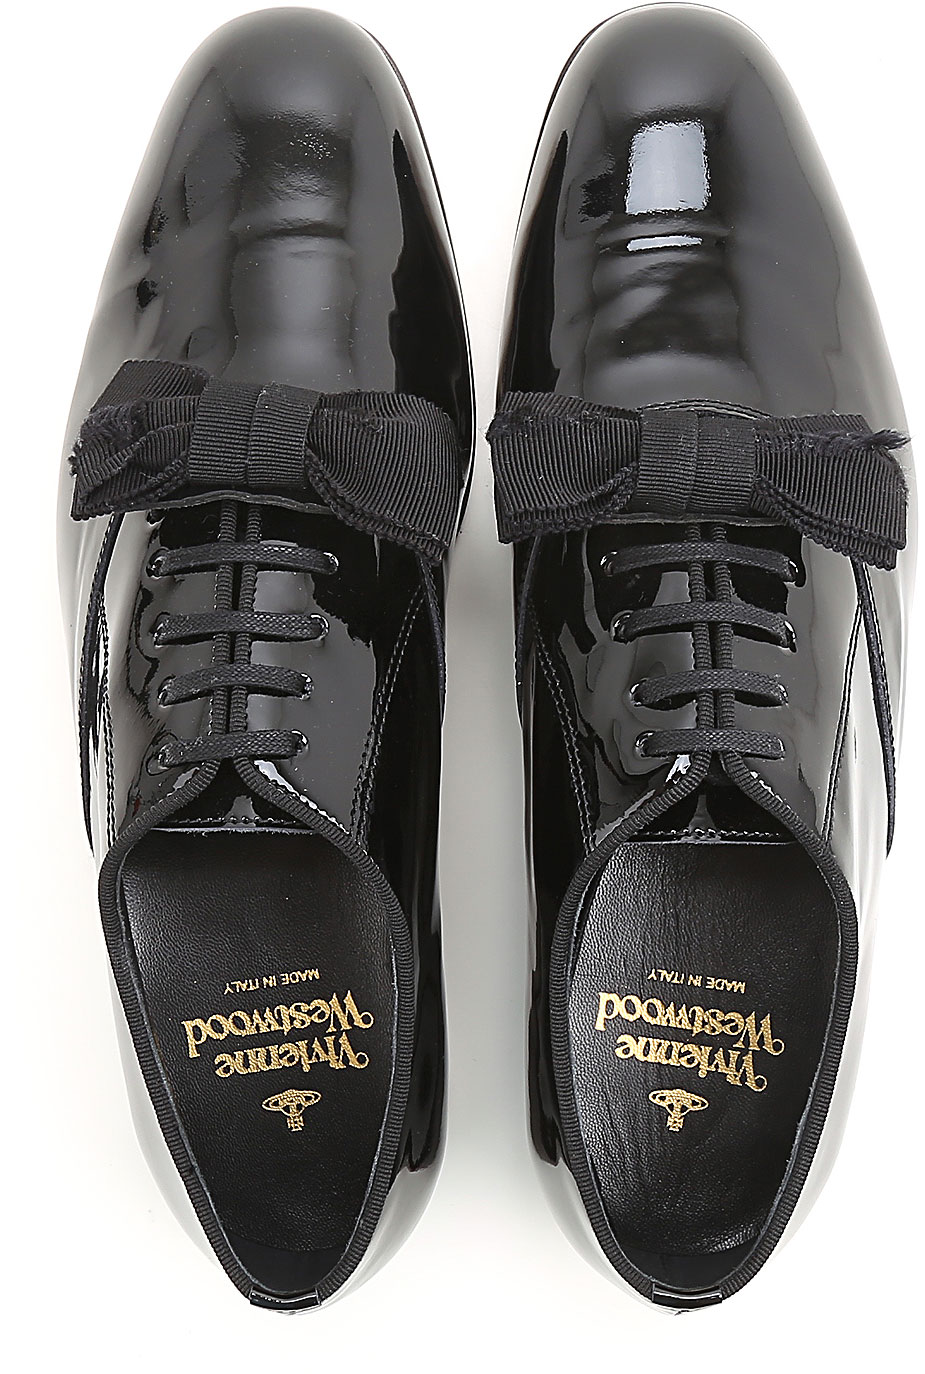 Mens Shoes Vivienne Westwood, Style code 7203002440100n423